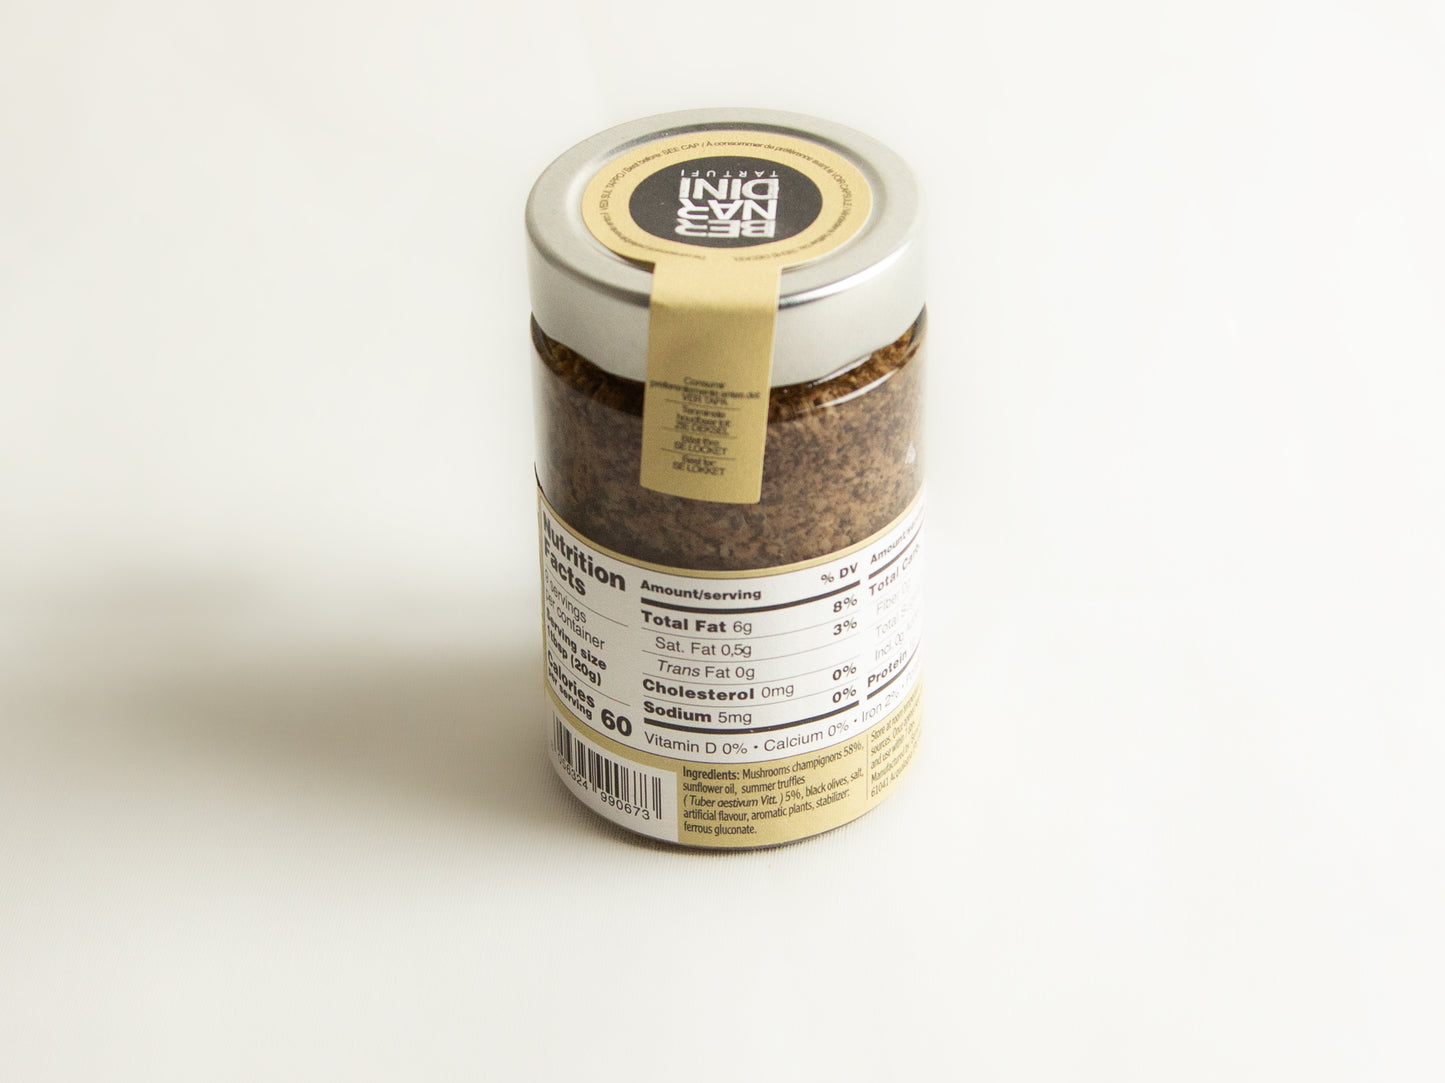 Bernardini Truffle Sauce nutrition label